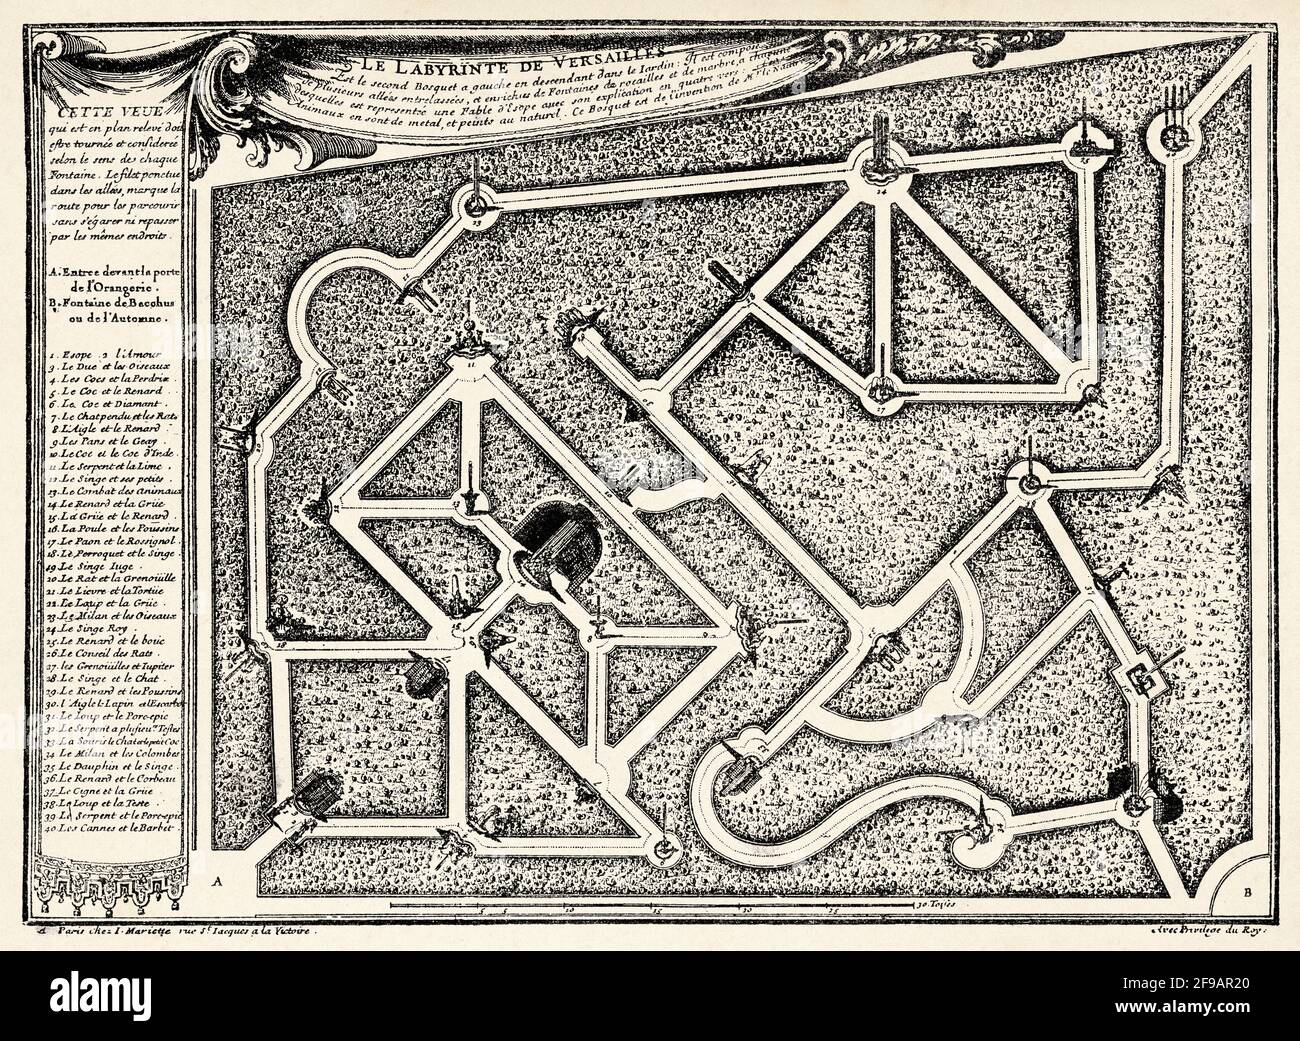 Carte du labyrinthe de Versailles, c'était un labyrinthe de haies dans les jardins avec des groupes de fontaines et de sculptures représentant les fables d'Aesop, Paris. France. Europe. Ancienne illustration gravée du XIXe siècle de la nature 1889 Banque D'Images